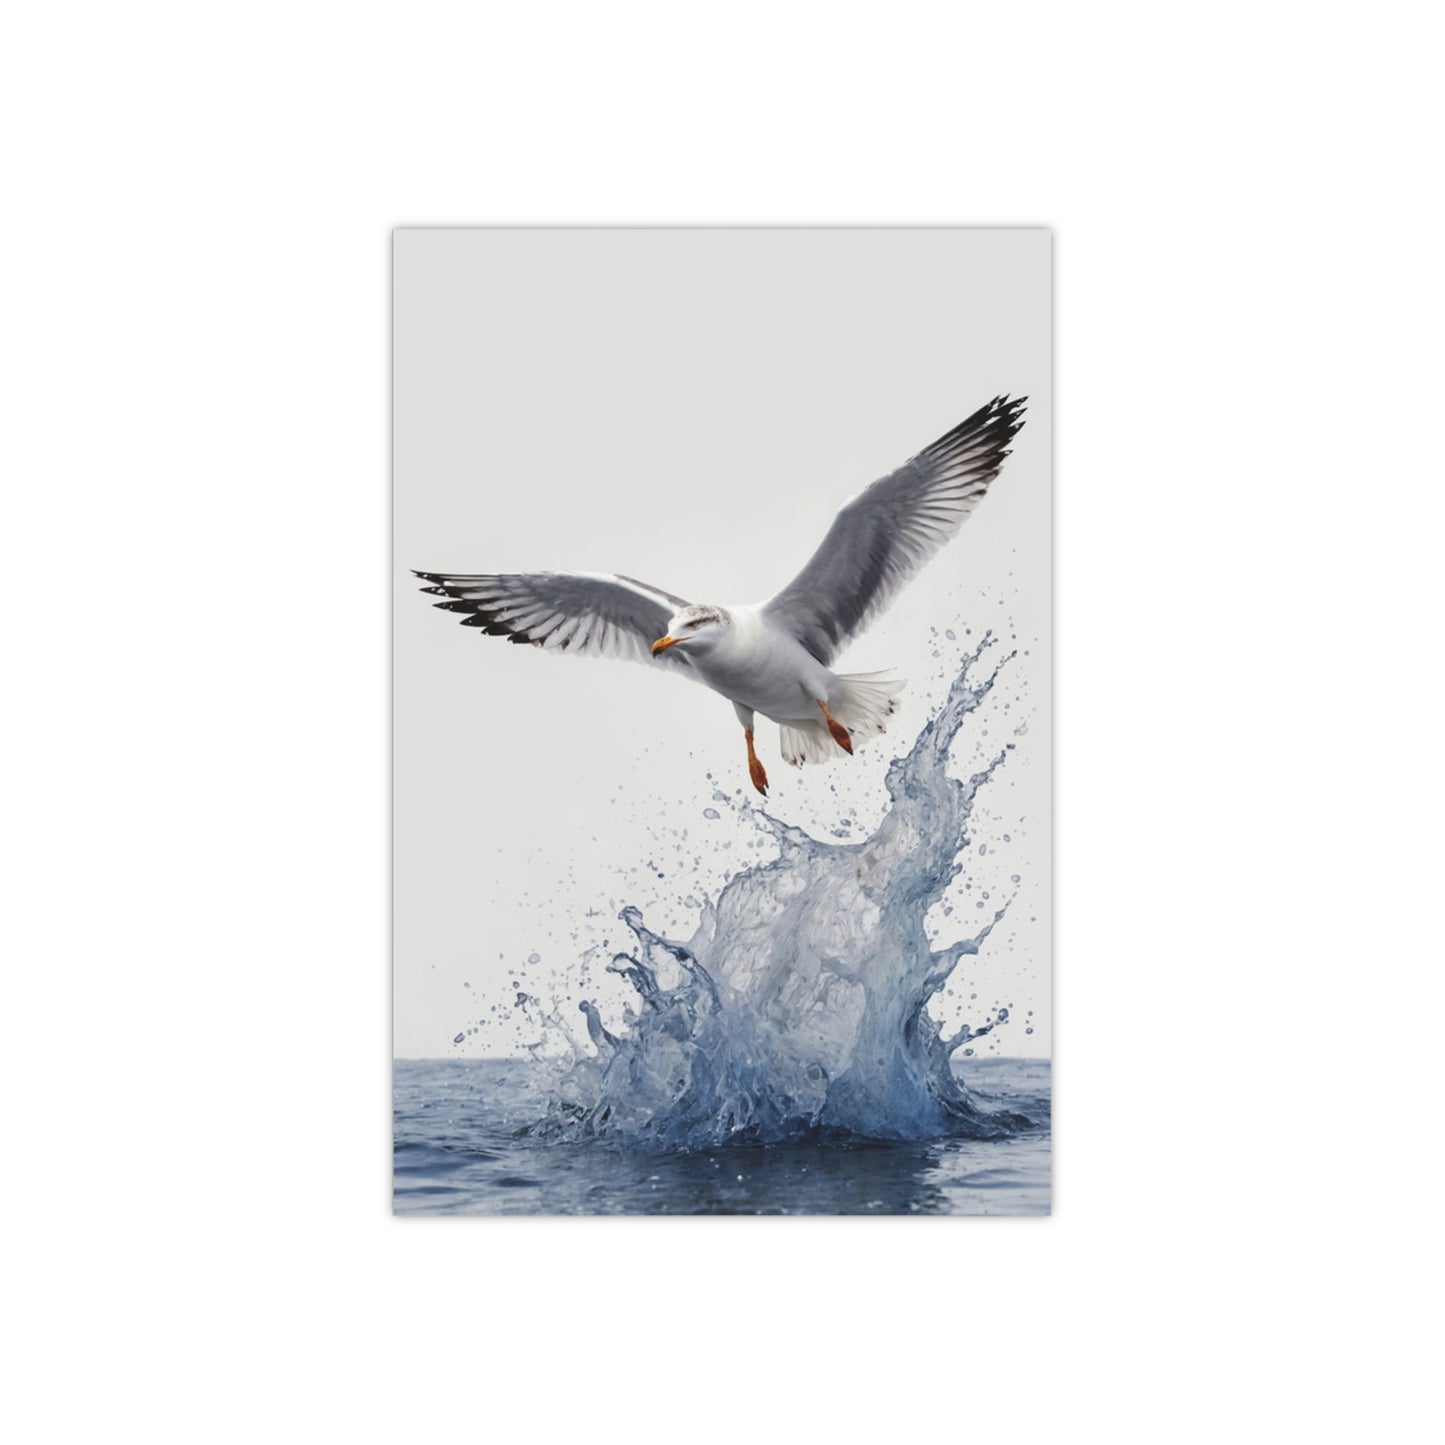 Splashwinger the Seagull - Poster